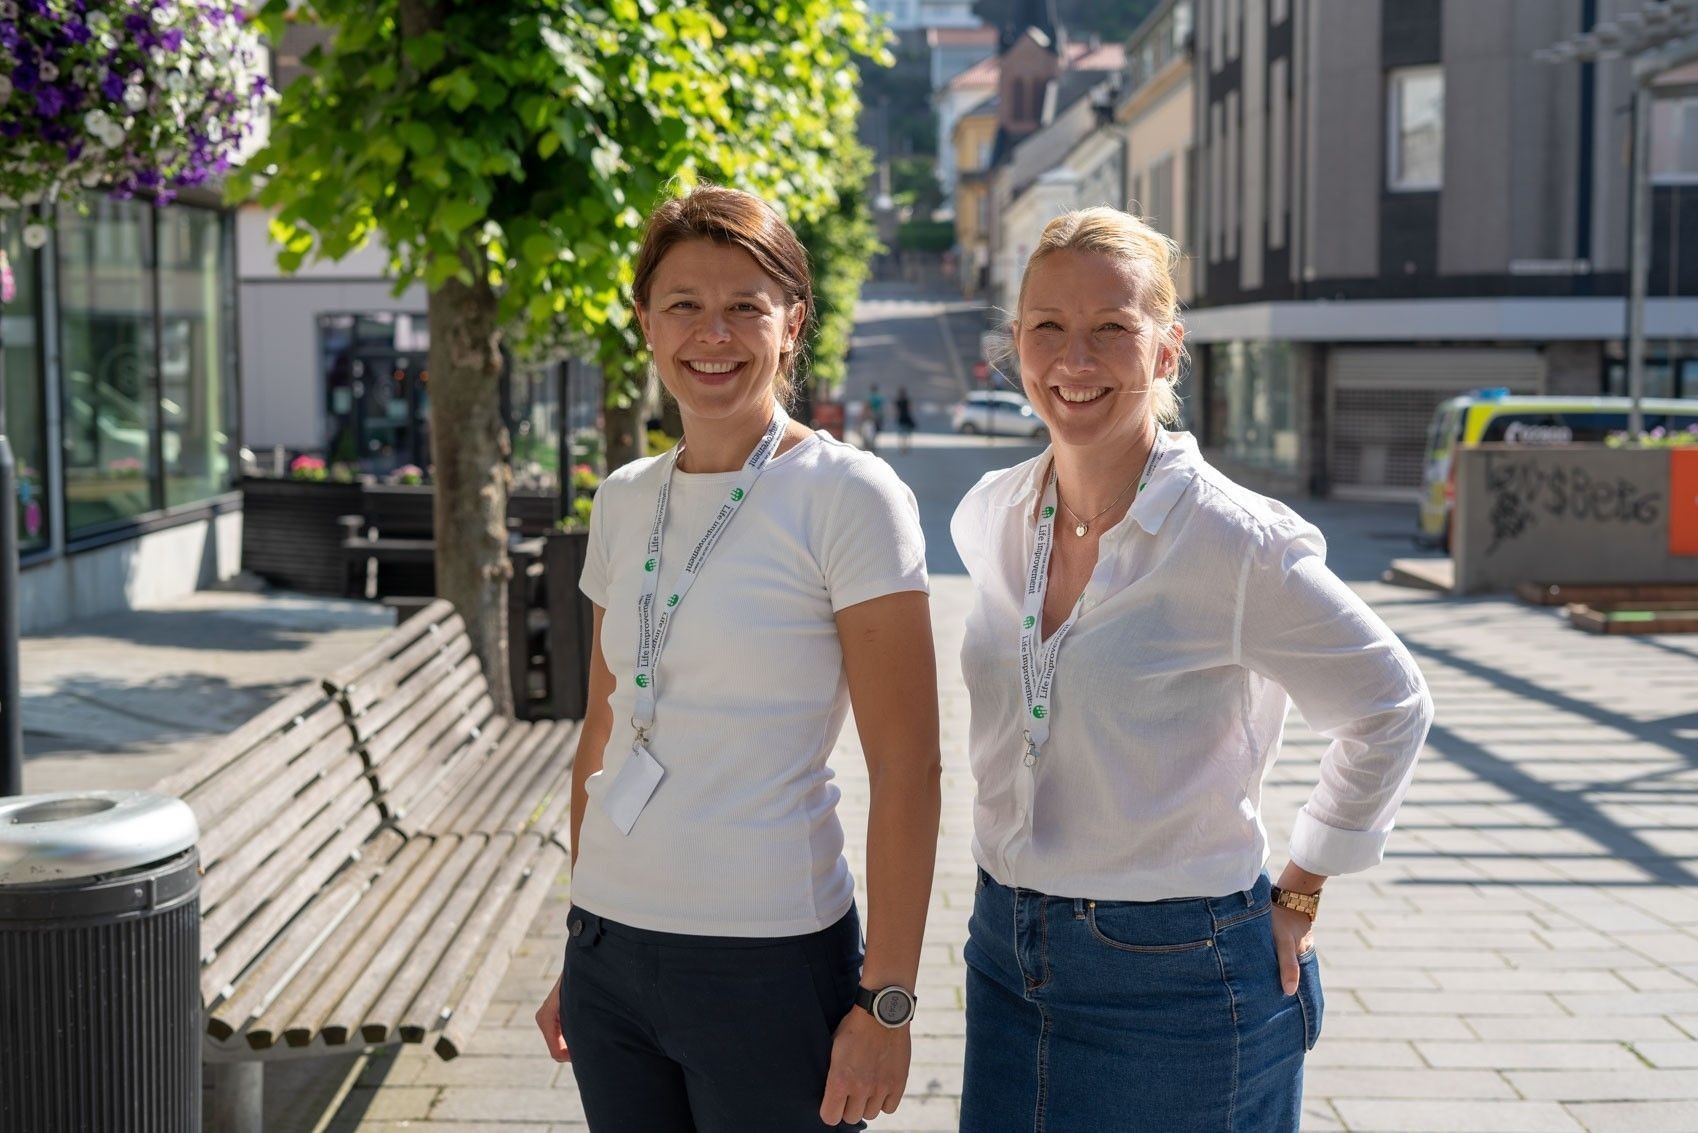 
EKSPERTHJELP: (F.V.) Linda Hannevold Holt og Katrine A. Torskog håper på å kunne hjelpe flere bedrifter med å redusere sykefraværet ved hjelp av kostnadsfri eksperthjelp.
